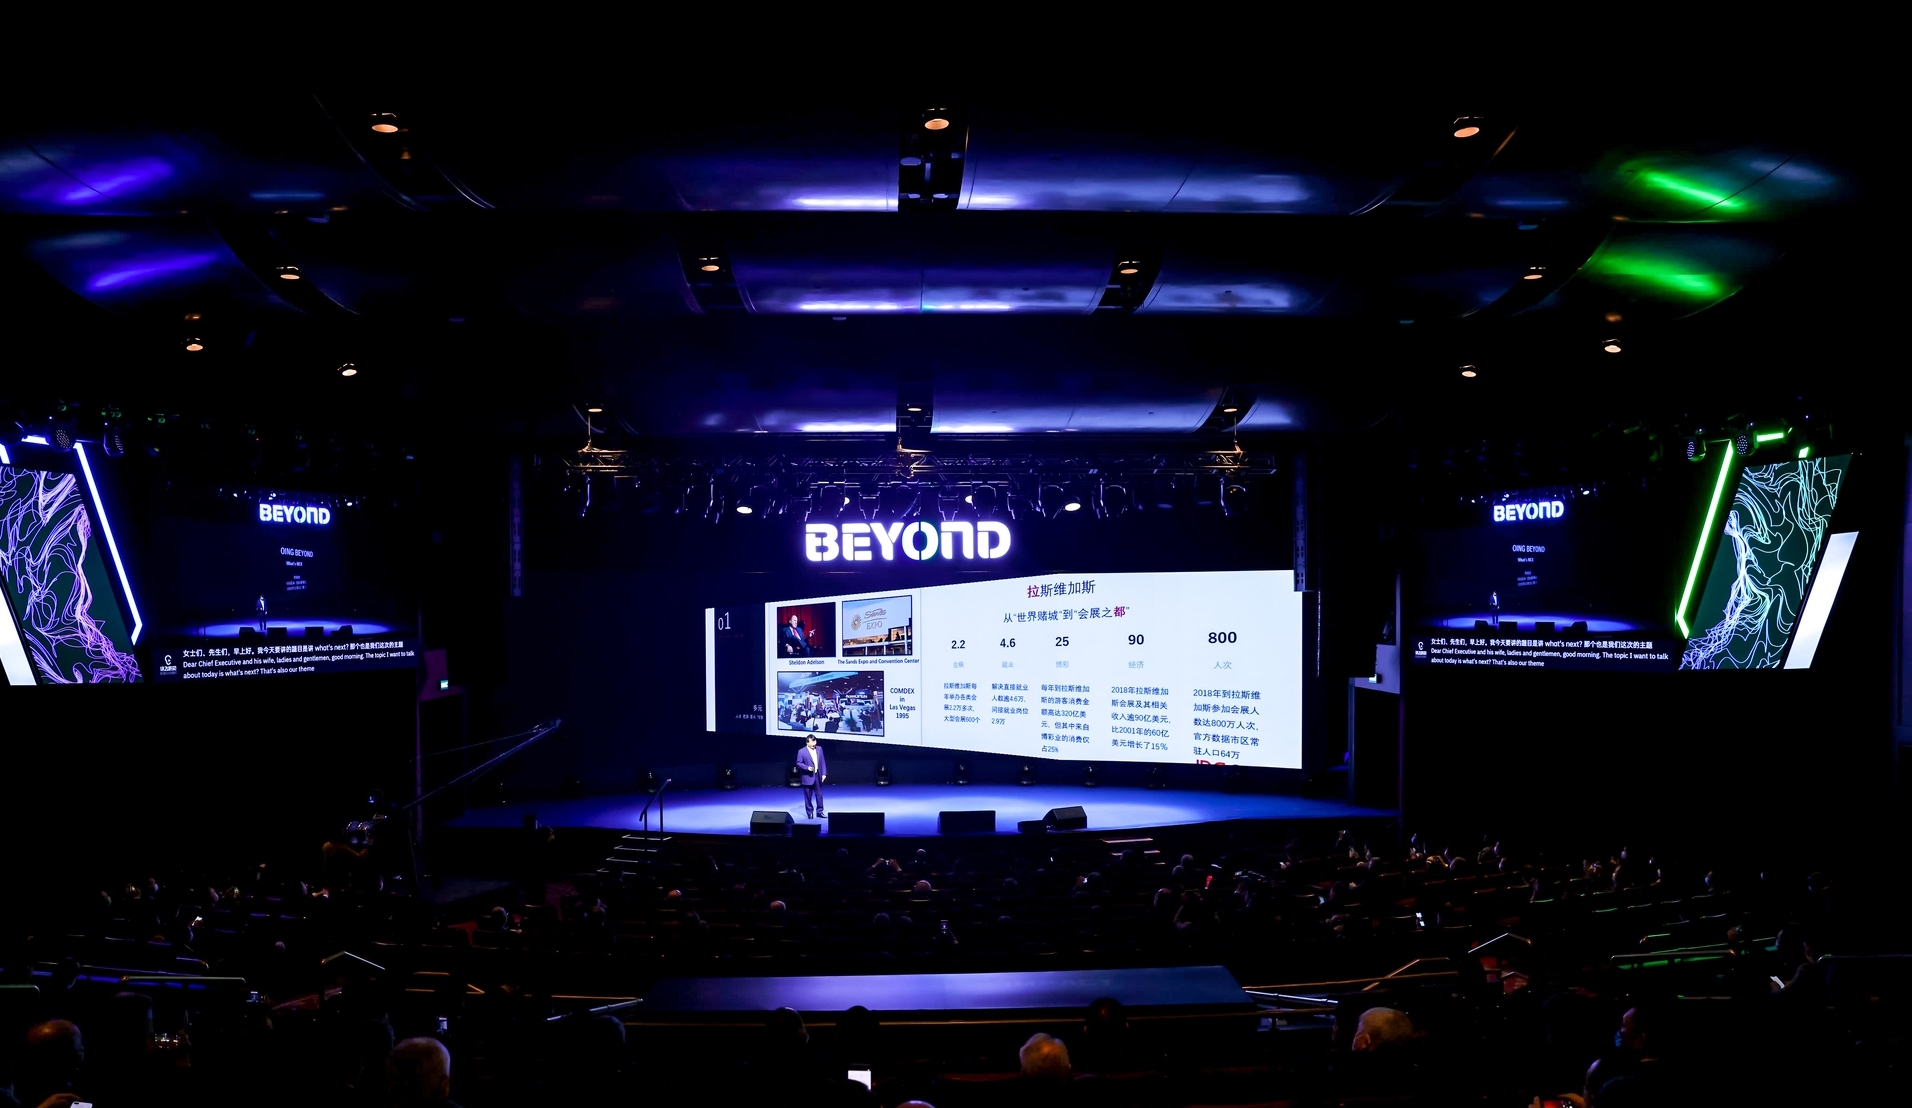 Dez startups do Brasil e de Portugal querem investir na Beyond Expo